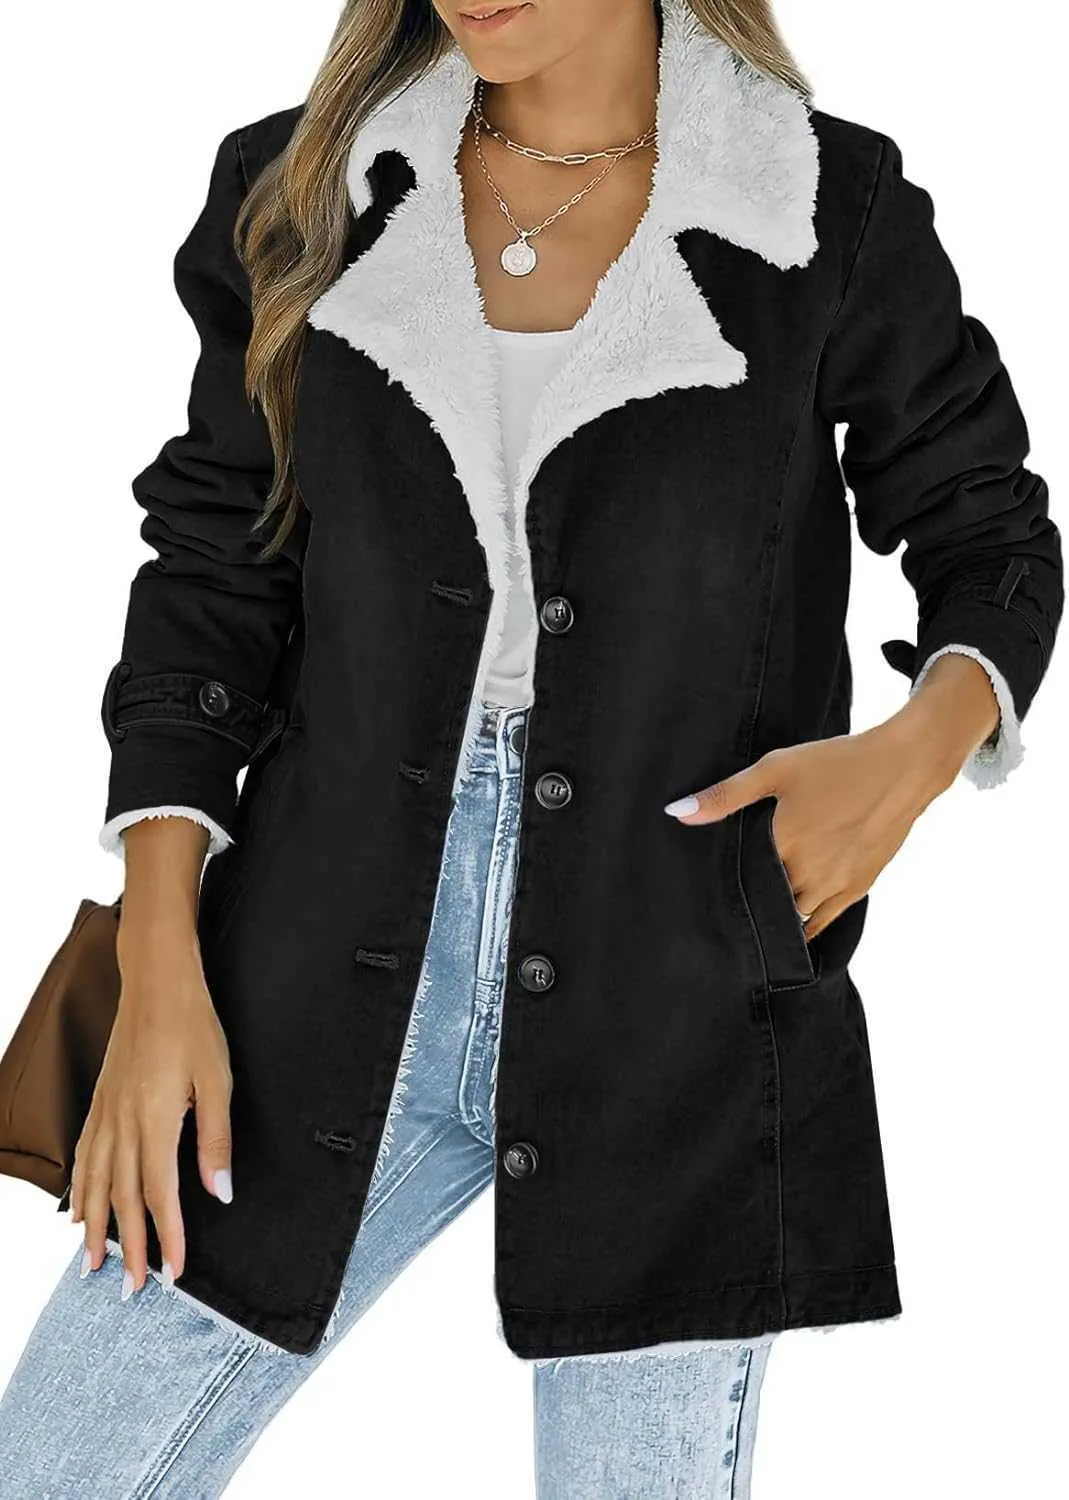 Mulheres inverno quente jaqueta jeans gola alta forro de lã sherpa denim jaqueta engrossada com bolsos jaqueta 60zdu